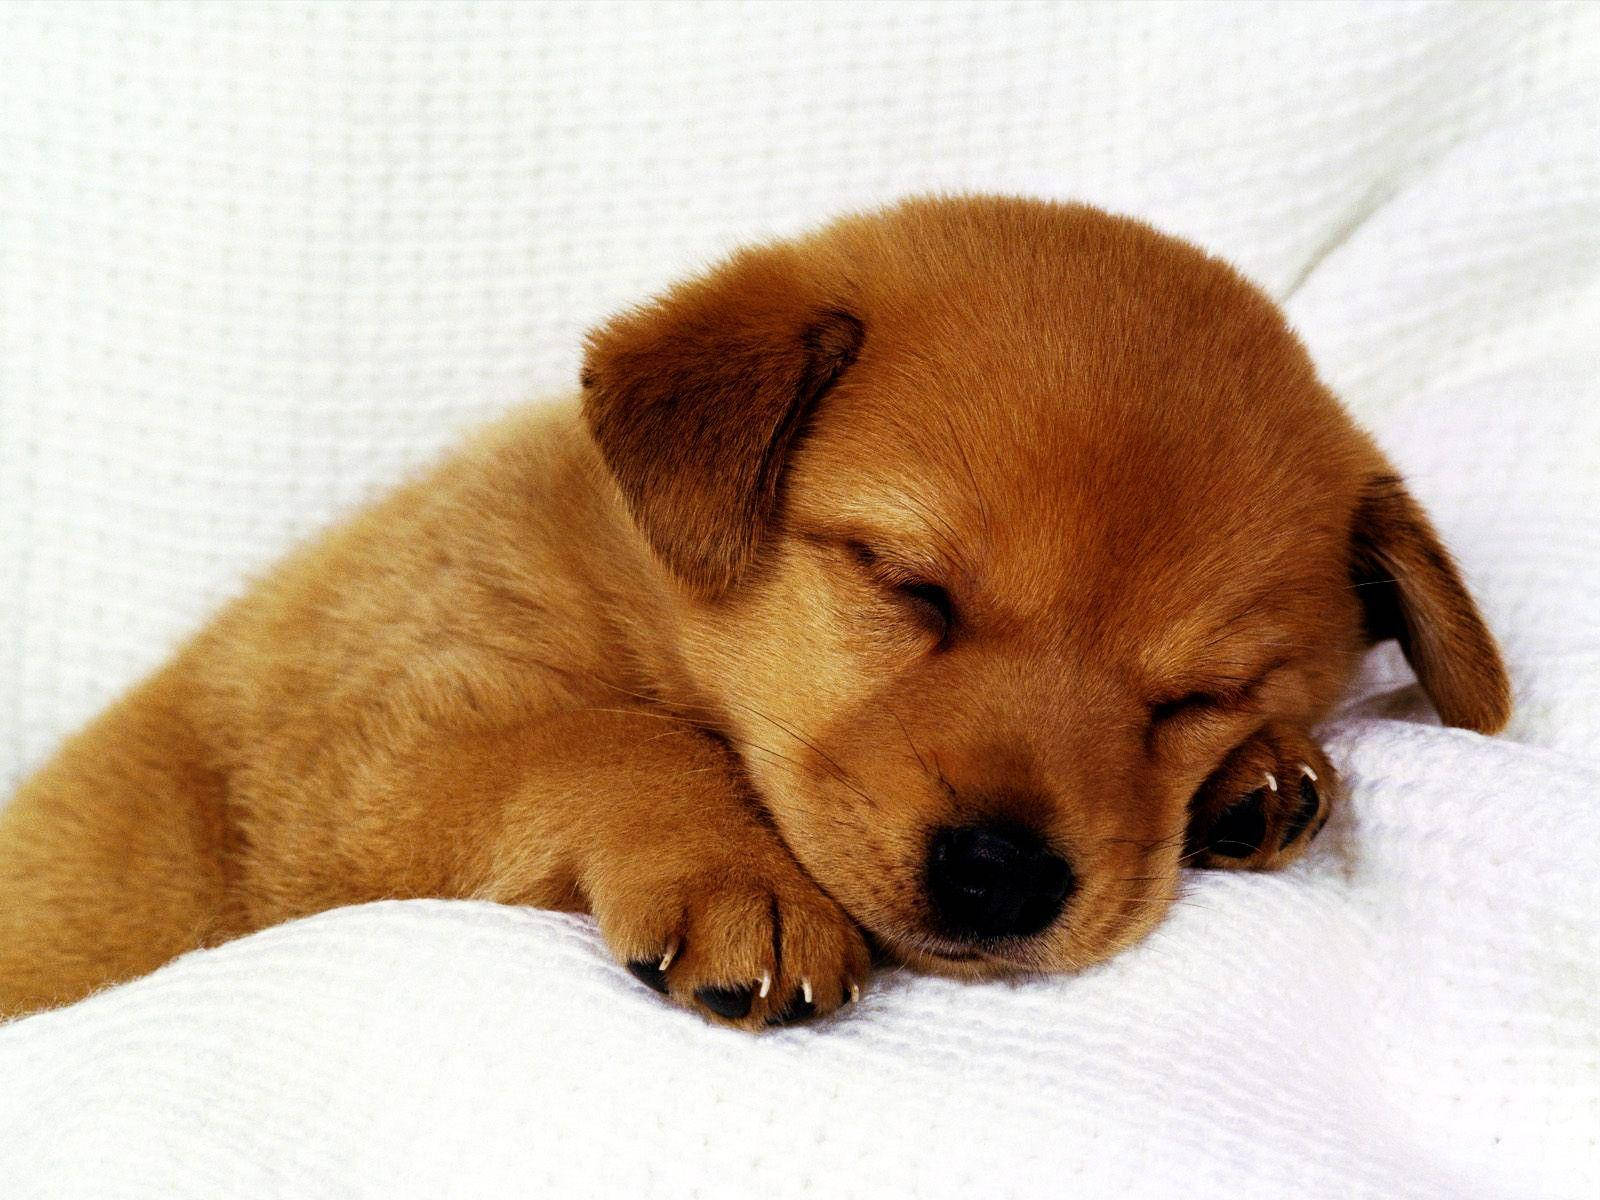 Sleeping Cute Puppy